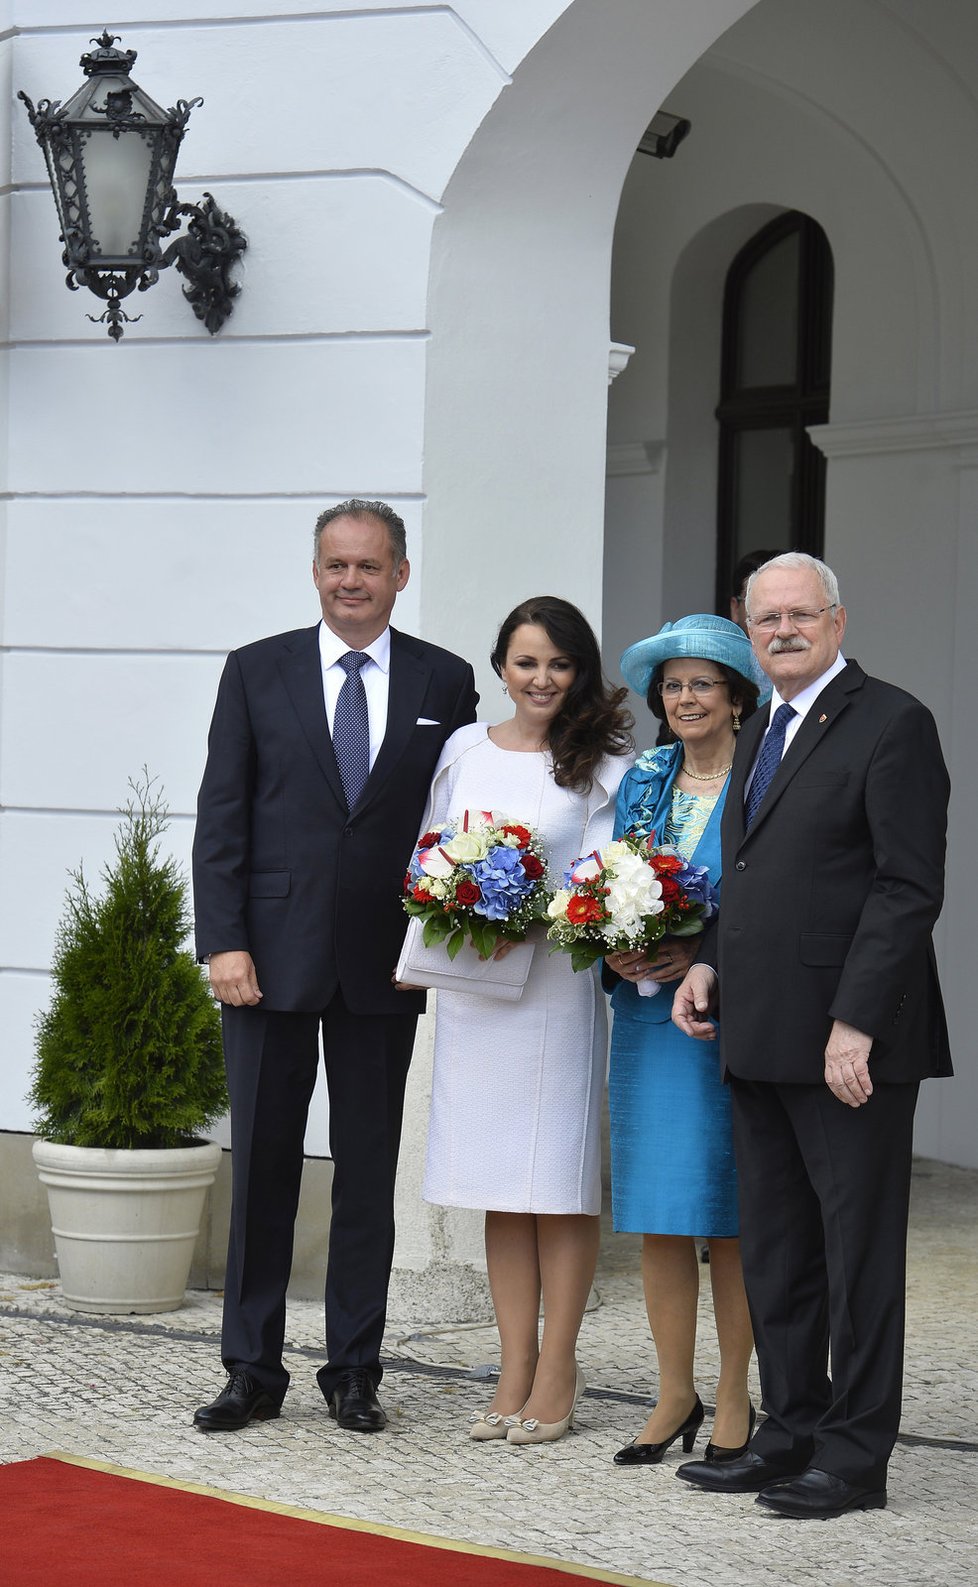 Kiskovi vystřídali na postu slovenského prezidentského páru Ivana Gašparoviče s manželkou Silvií